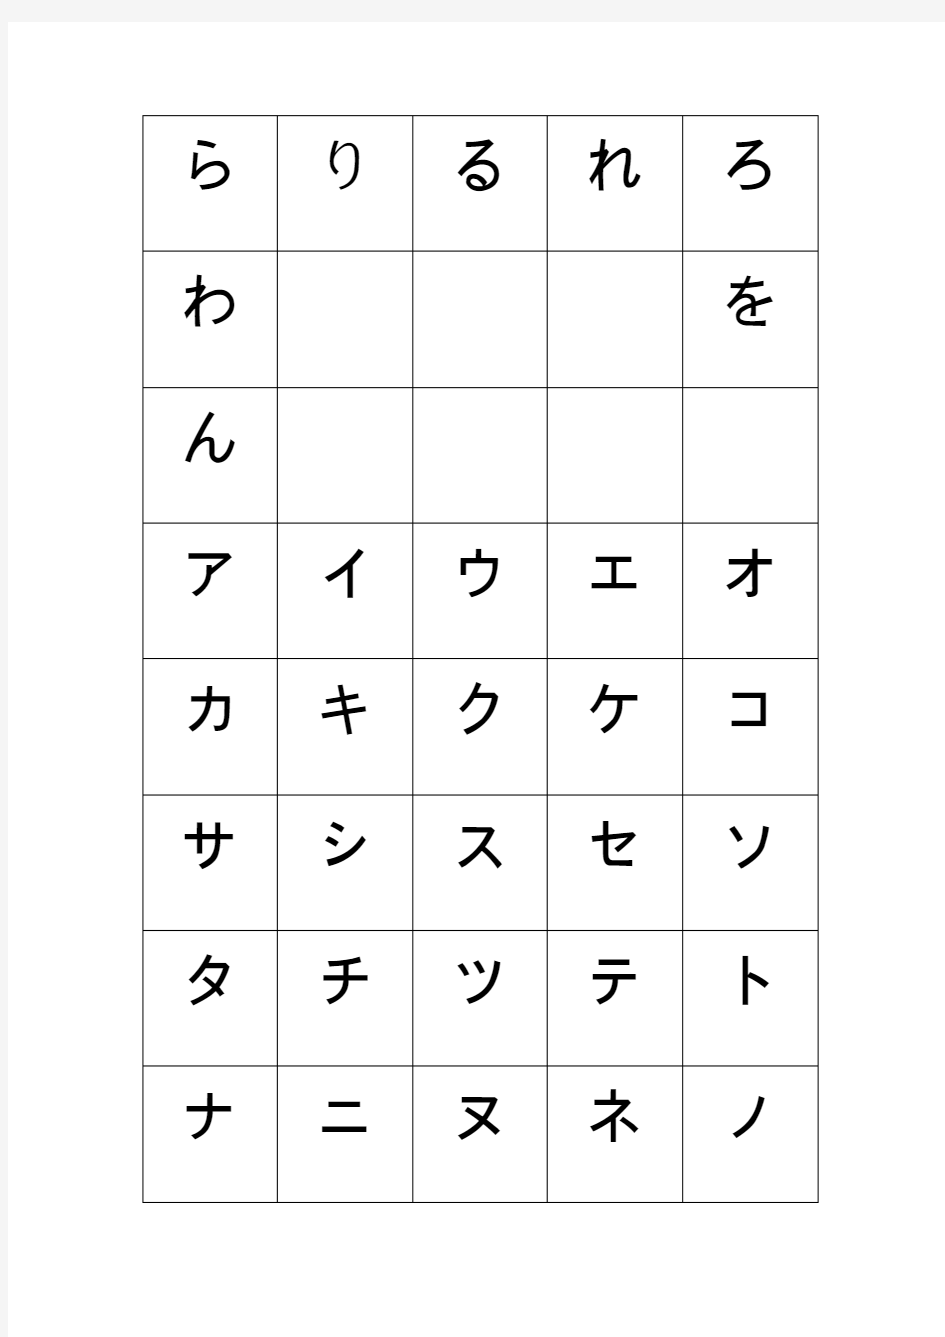 日语假名手写体 (1)